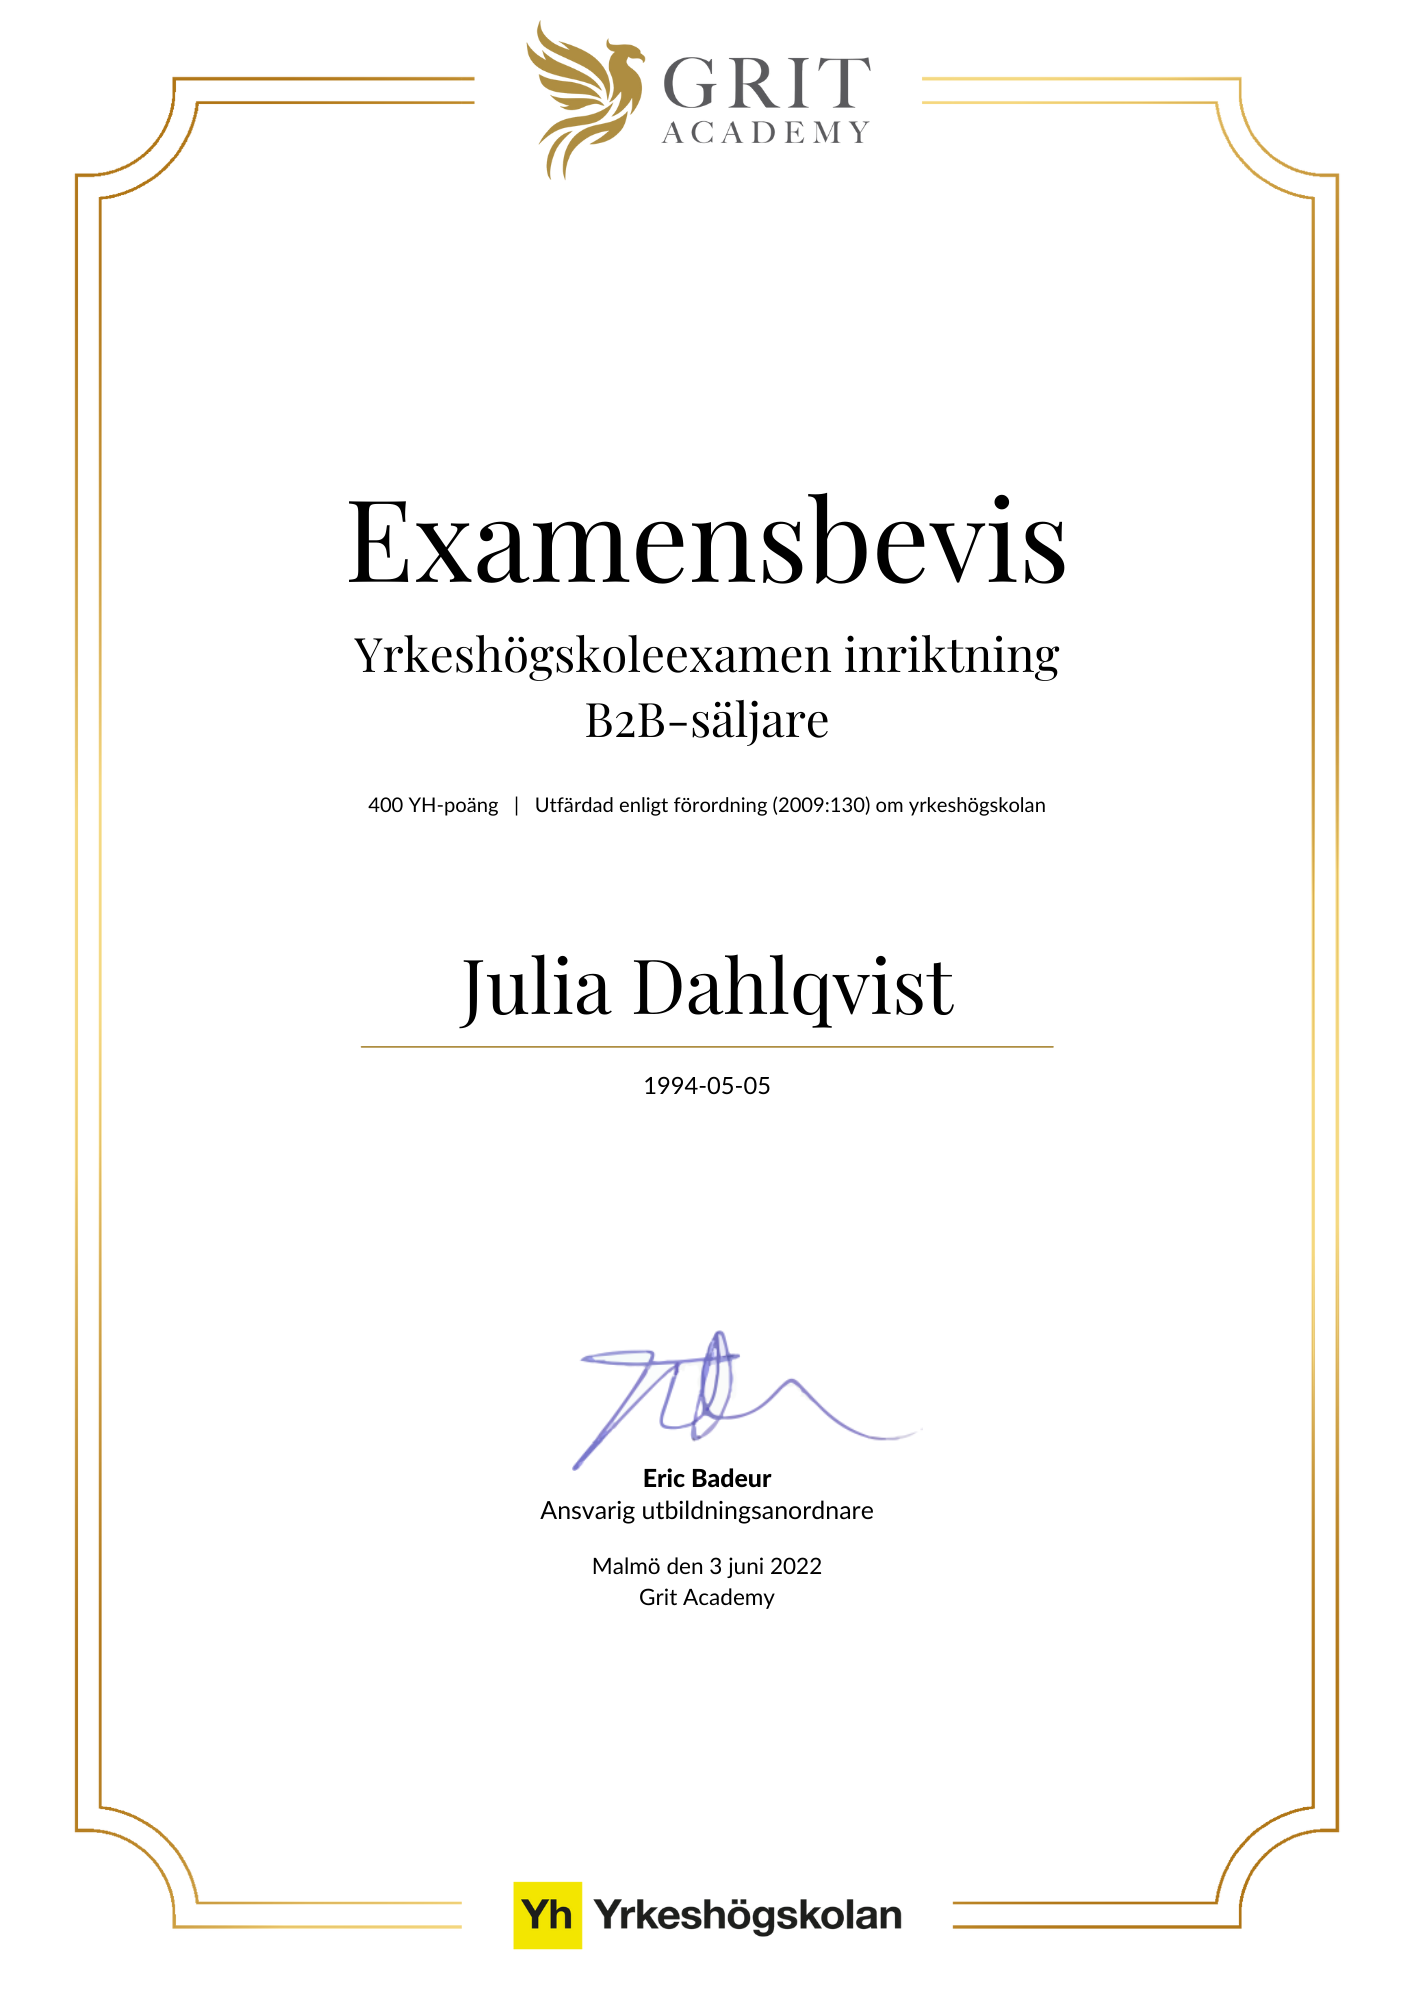 Examensbevis Julia Dahlqvist